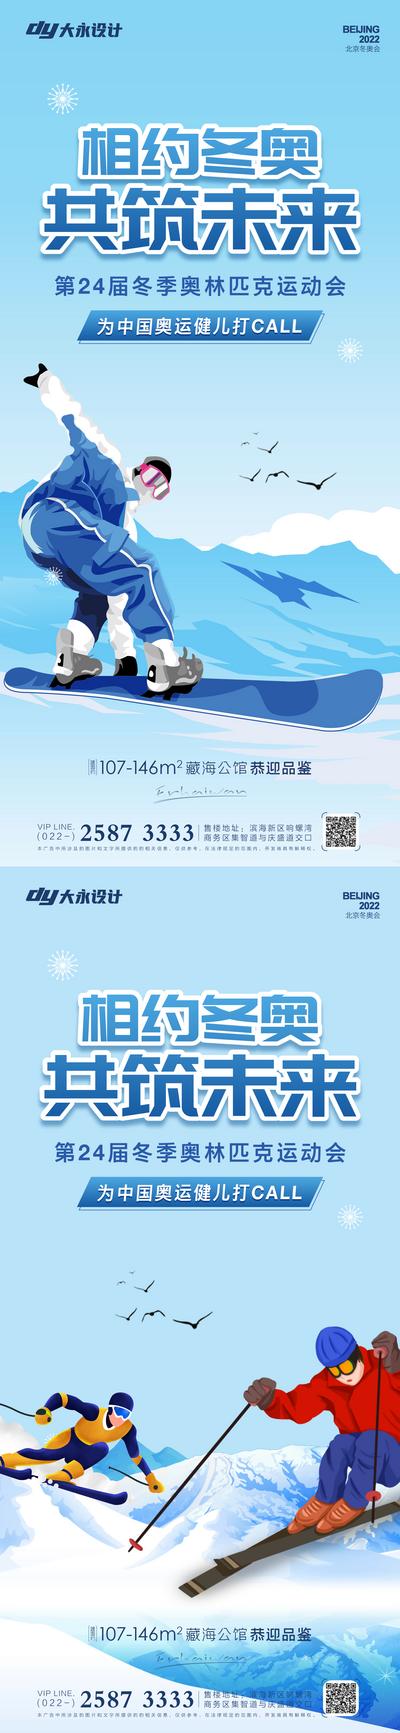 【南门网】海报 冬奥会 北京 2022 奥运会 滑雪 运动会 加油 体育 滑冰